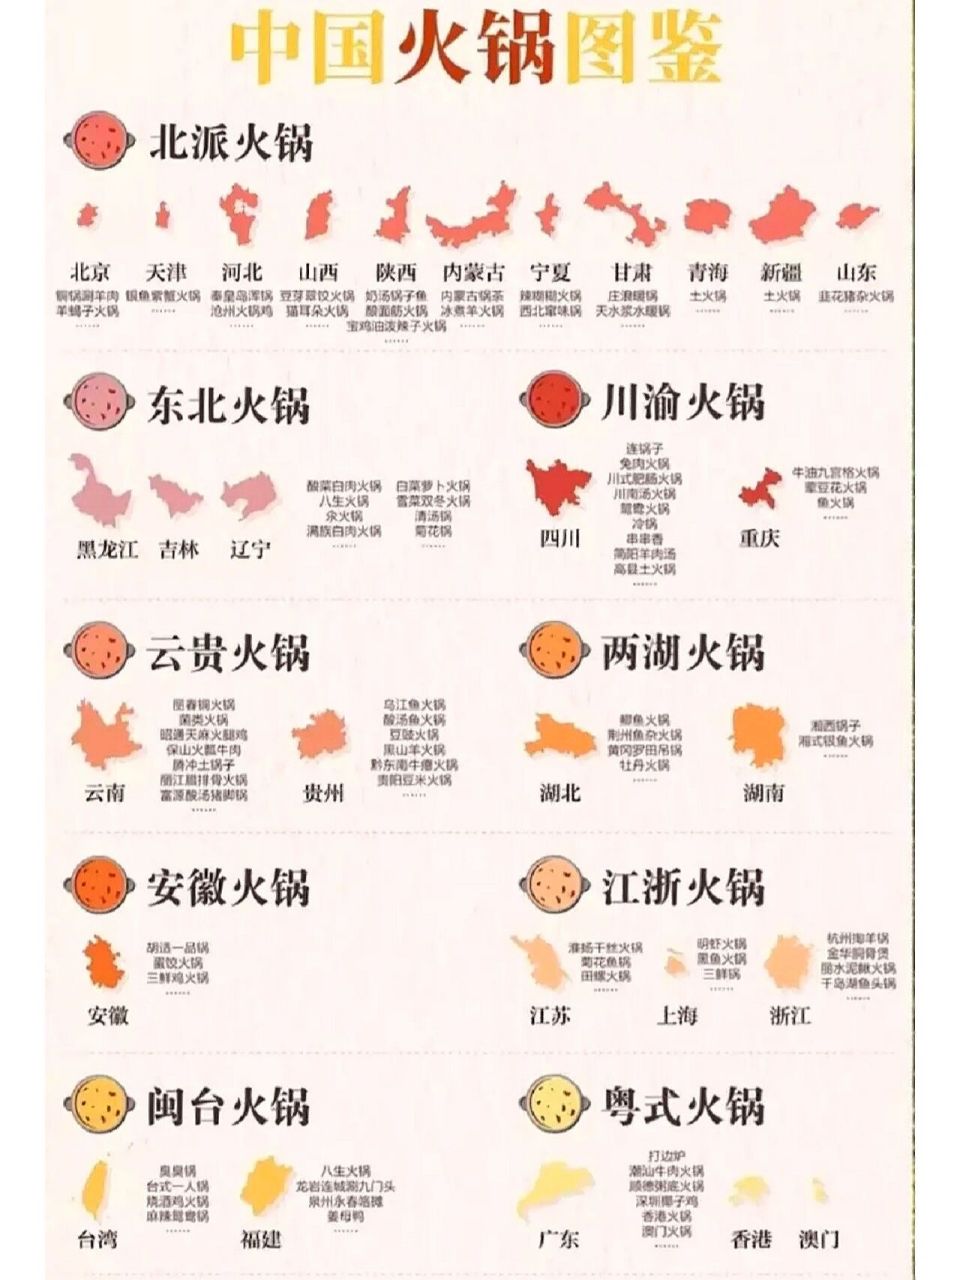 中国火锅图鉴,哪个地方最好吃  在寒冷的冬日里,最让人无法抗拒的除了